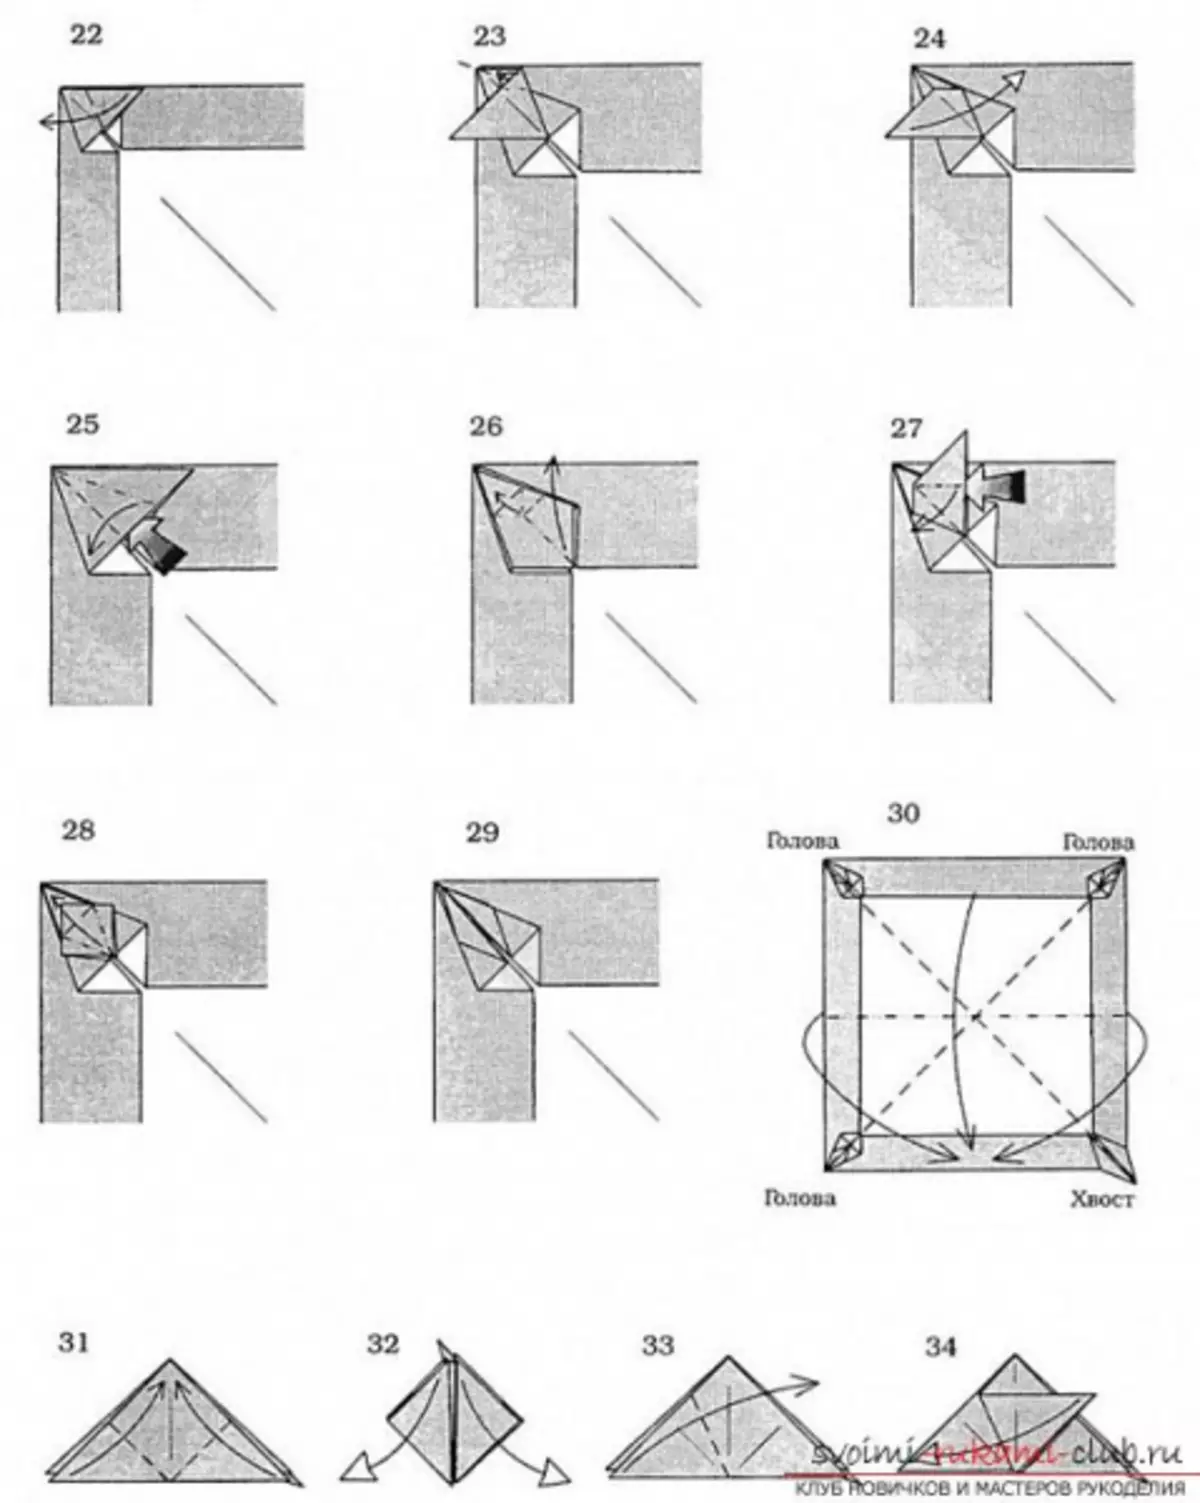 Оригами аждаһа кәгазеннән: схема һәм видео белән башлап җибәрүчеләргә ничек ясарга